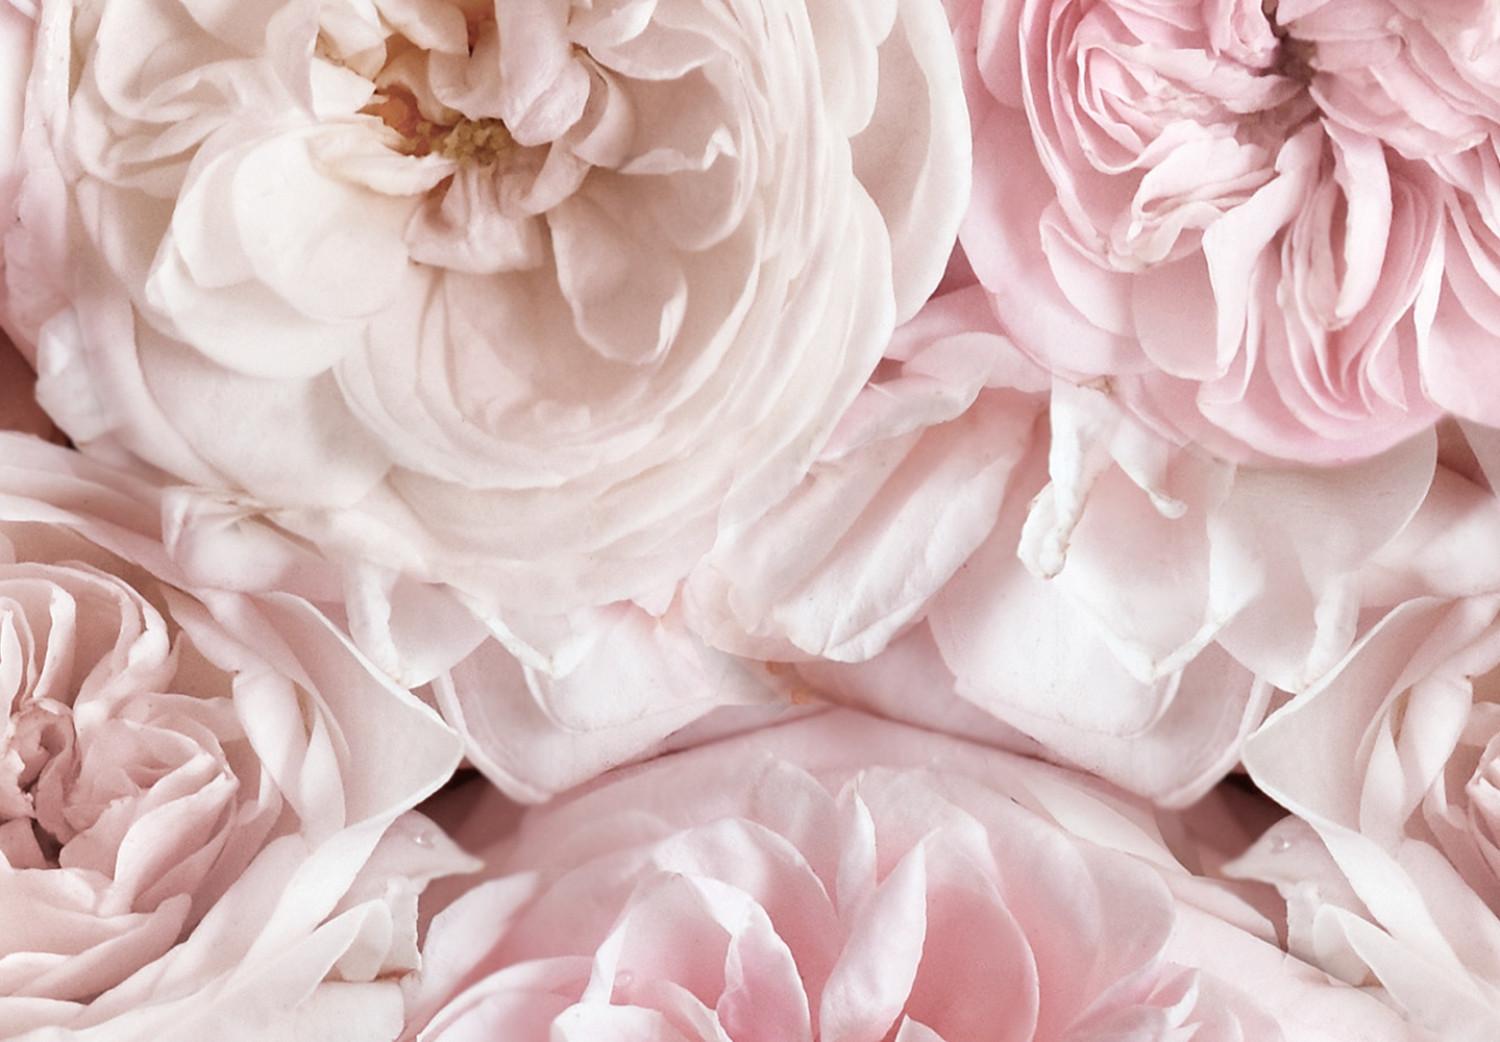 Cuadro decorativo Alfombra de rosas - flores vistas desde arriba en color rosa claro